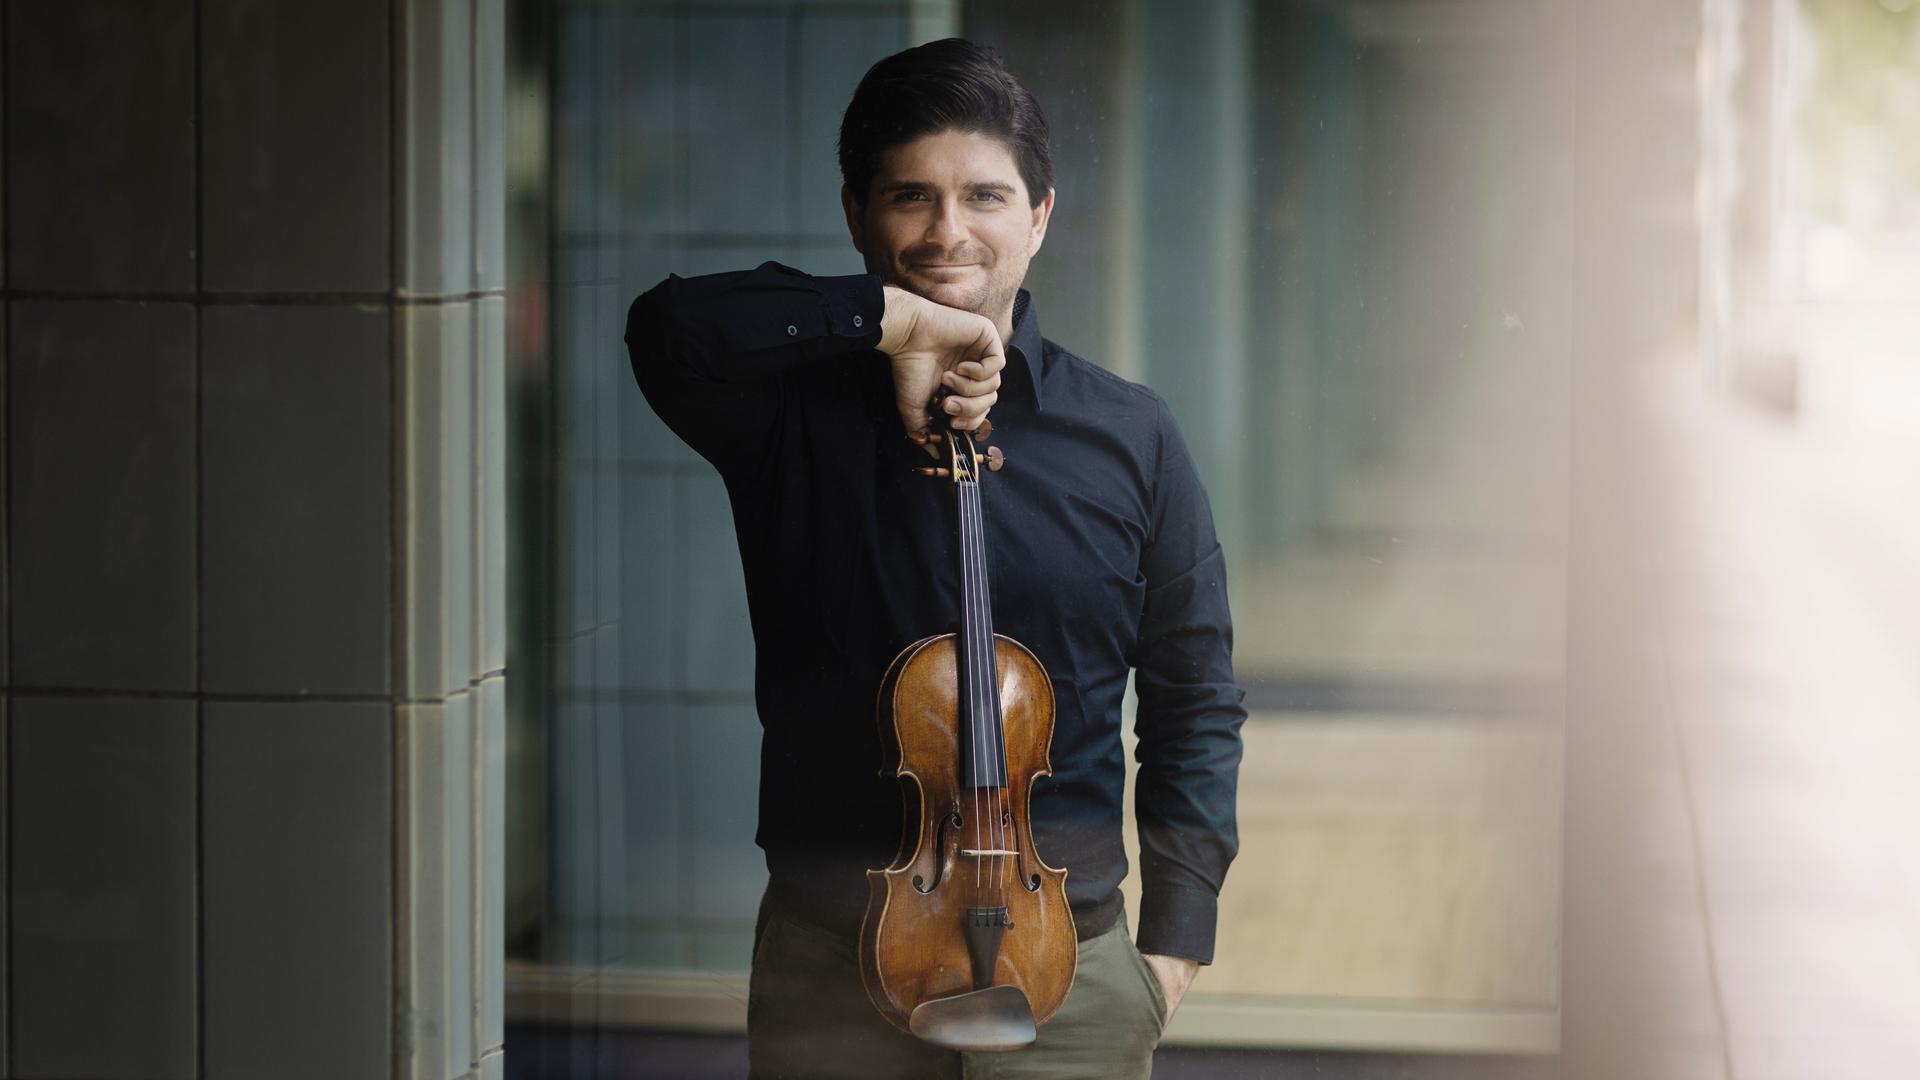 Fedor Rudin steht in einem sonnendurchflutenen Foyer mit vielen im Hintergrund immer kleiner werdenden Türen und präsentiert lächelnd seine Geige.